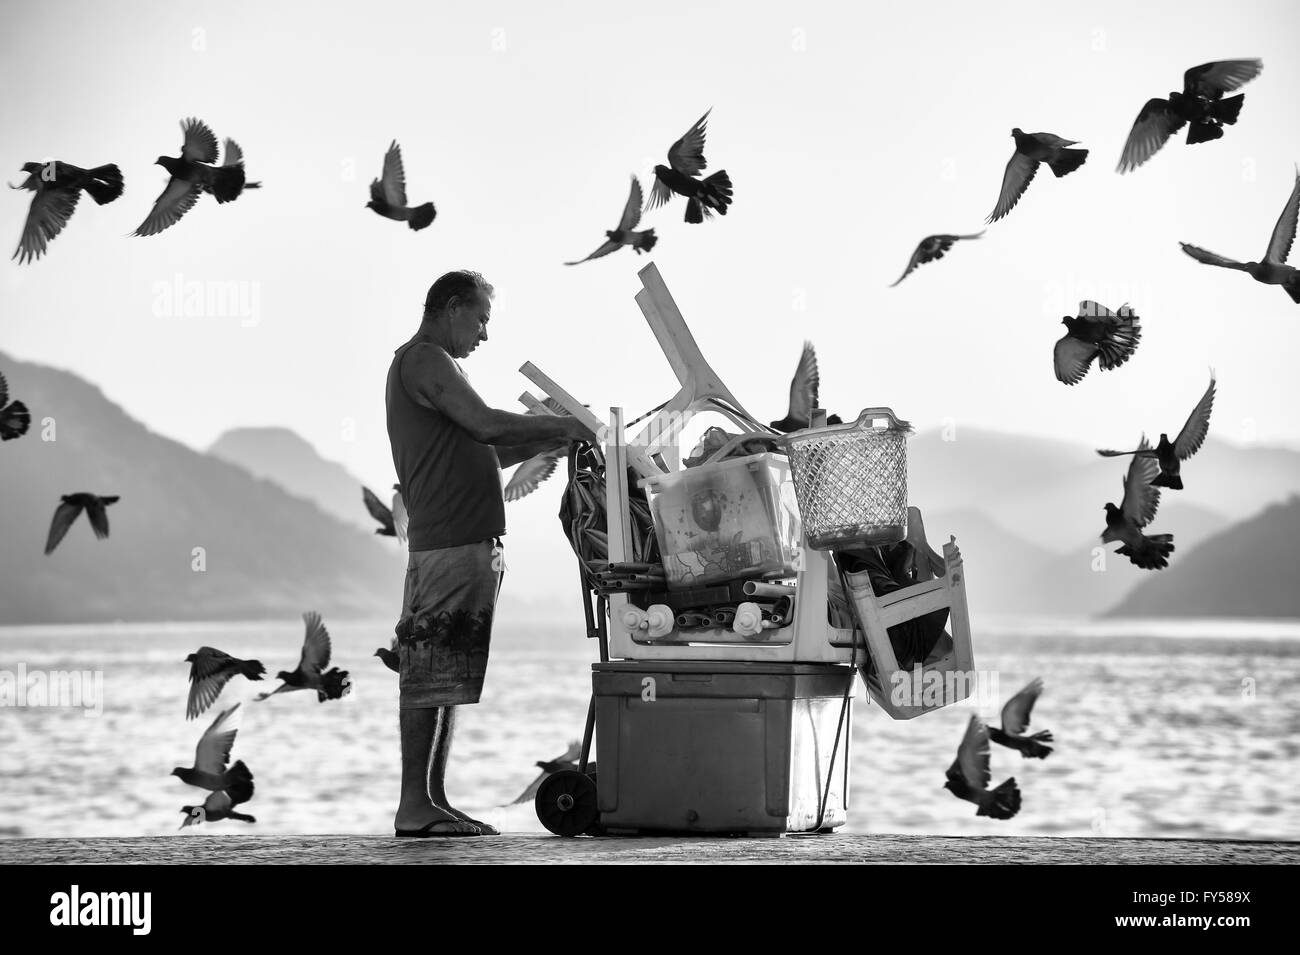 RIO DE JANEIRO - le 3 avril 2016 : une plage de Copacabana vendeur organise ses affaires comme un troupeau de pigeons passent dans le soleil du matin. Banque D'Images